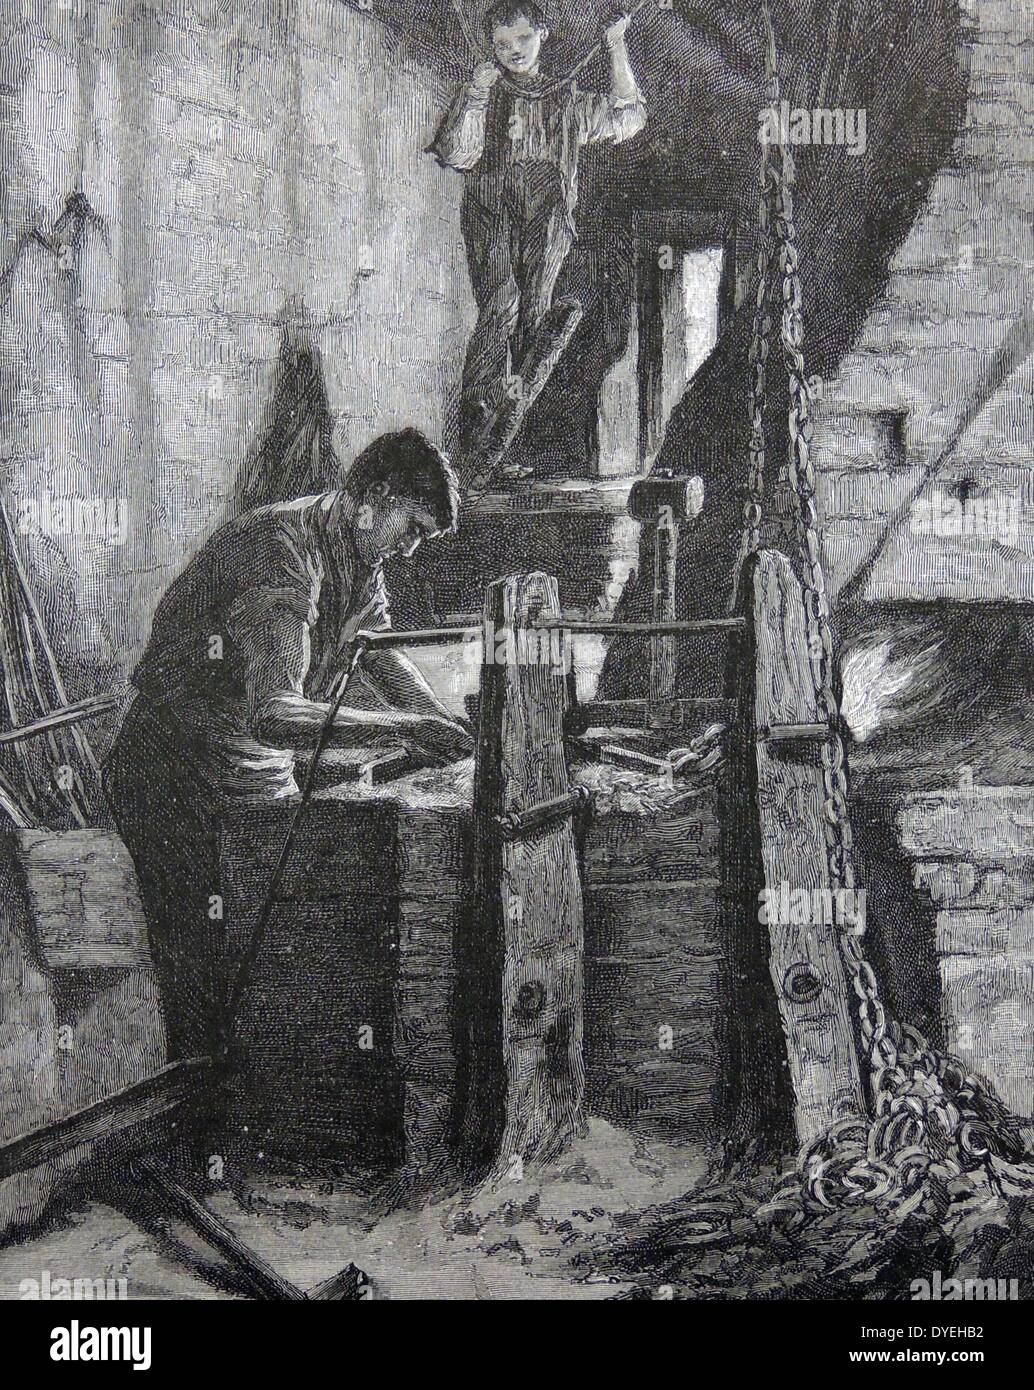 Die Ketten im Cradley Heath Gebiet des Schwarzen Land Fläche von England. Der junge arbeitet Sie den Faltenbalg, während der Mann die separate links Forges. Kupferstich, London, 1890. Stockfoto